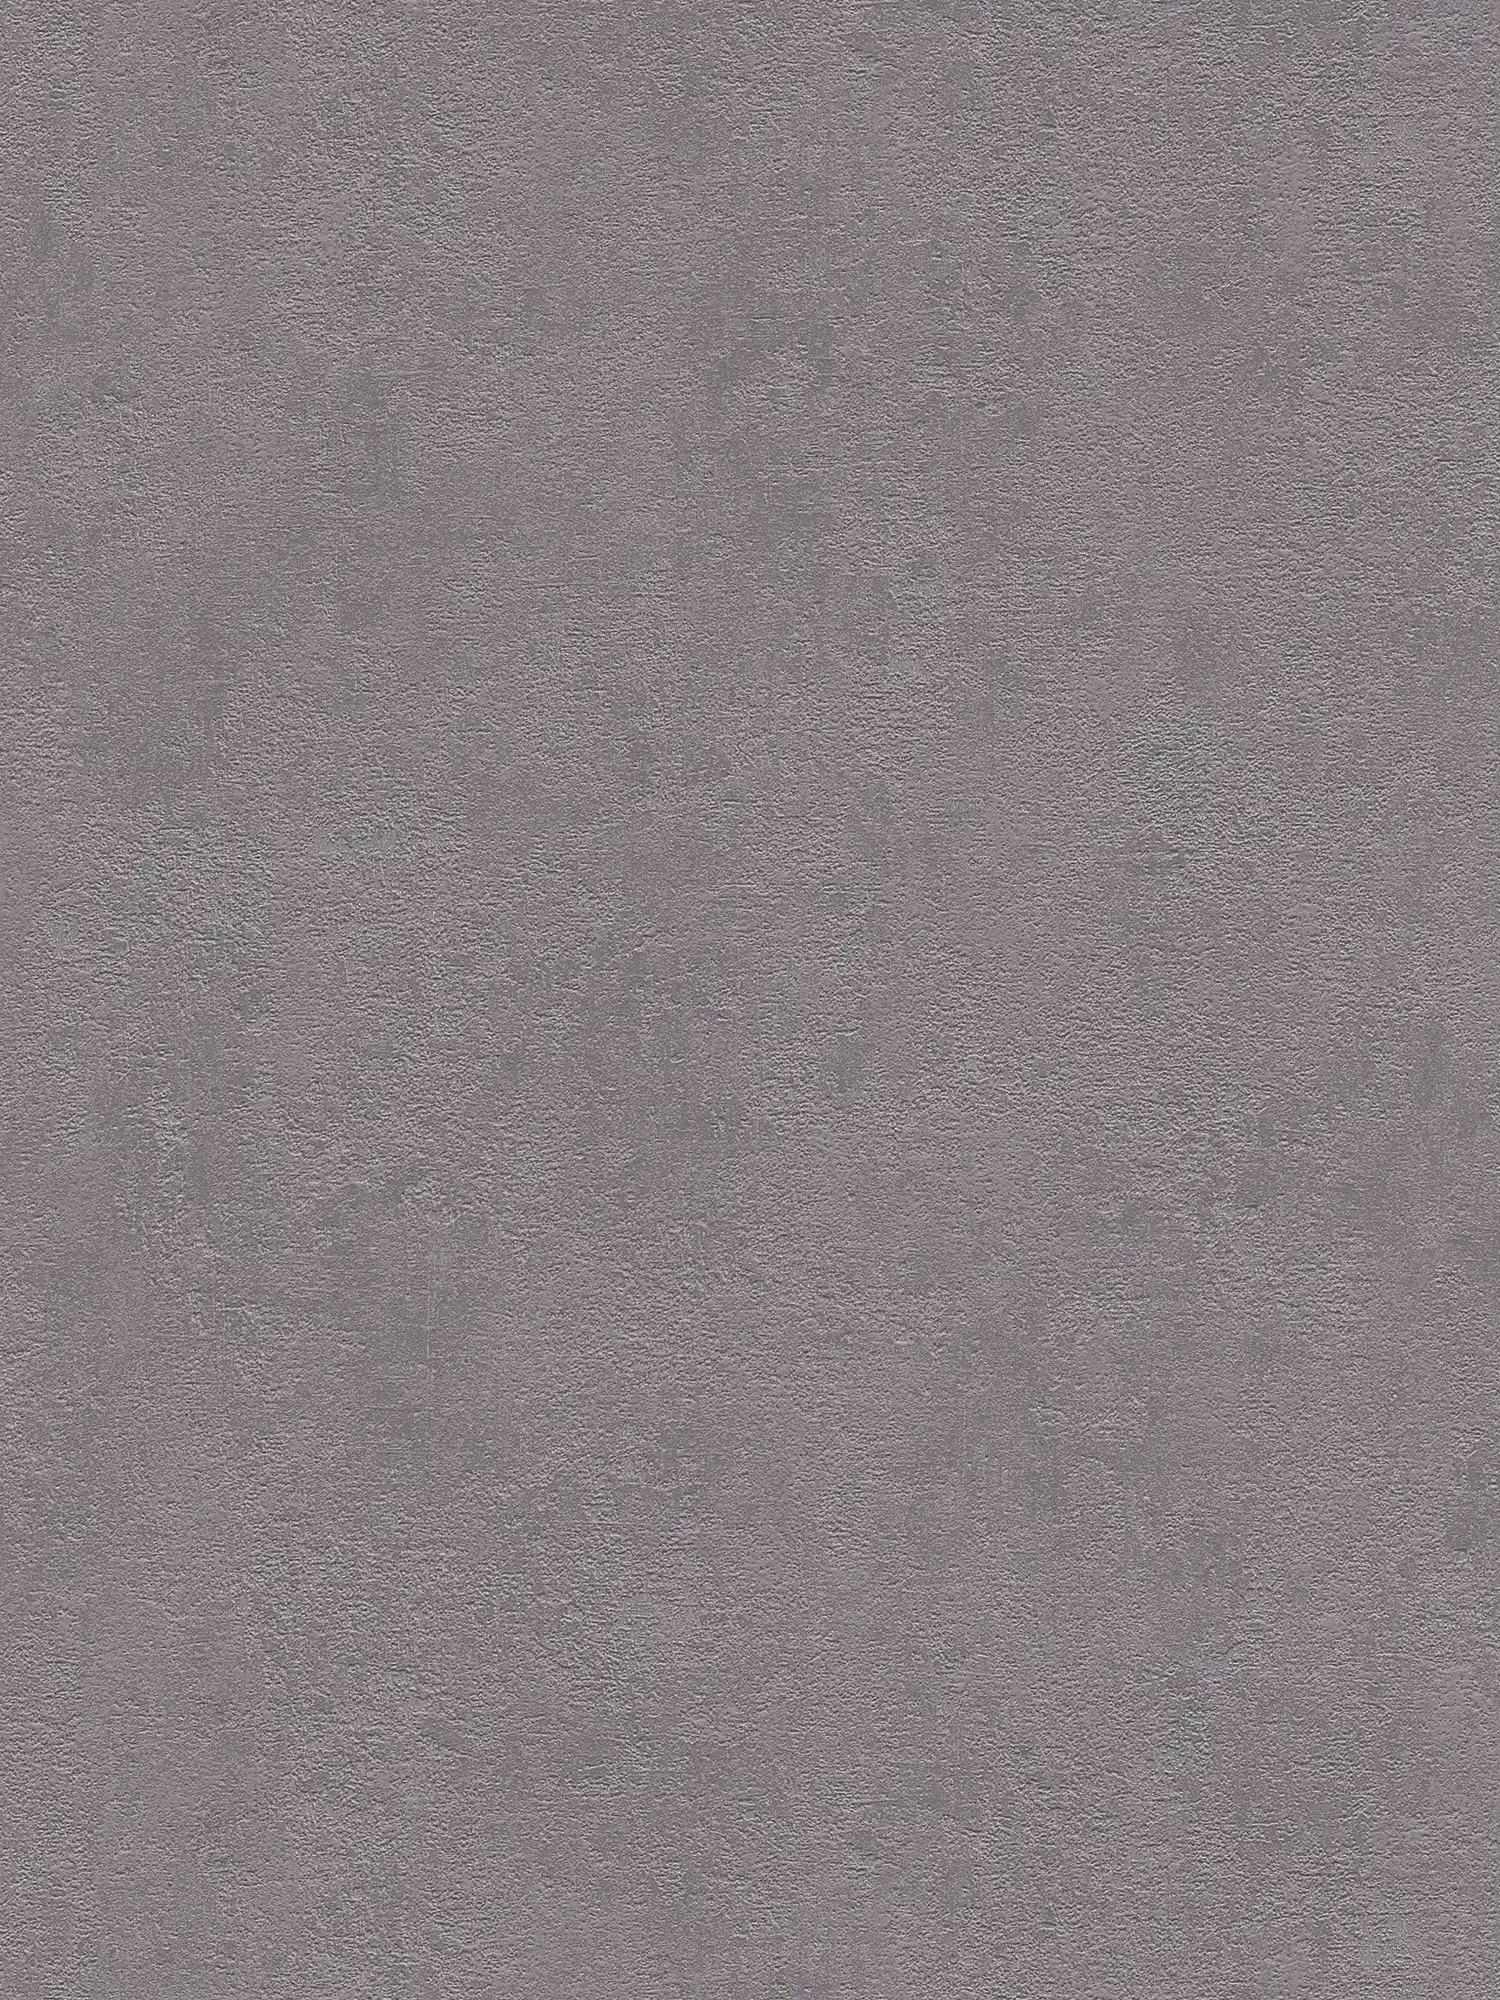             Papier peint plâtre structuré, uni & satiné - gris foncé
        